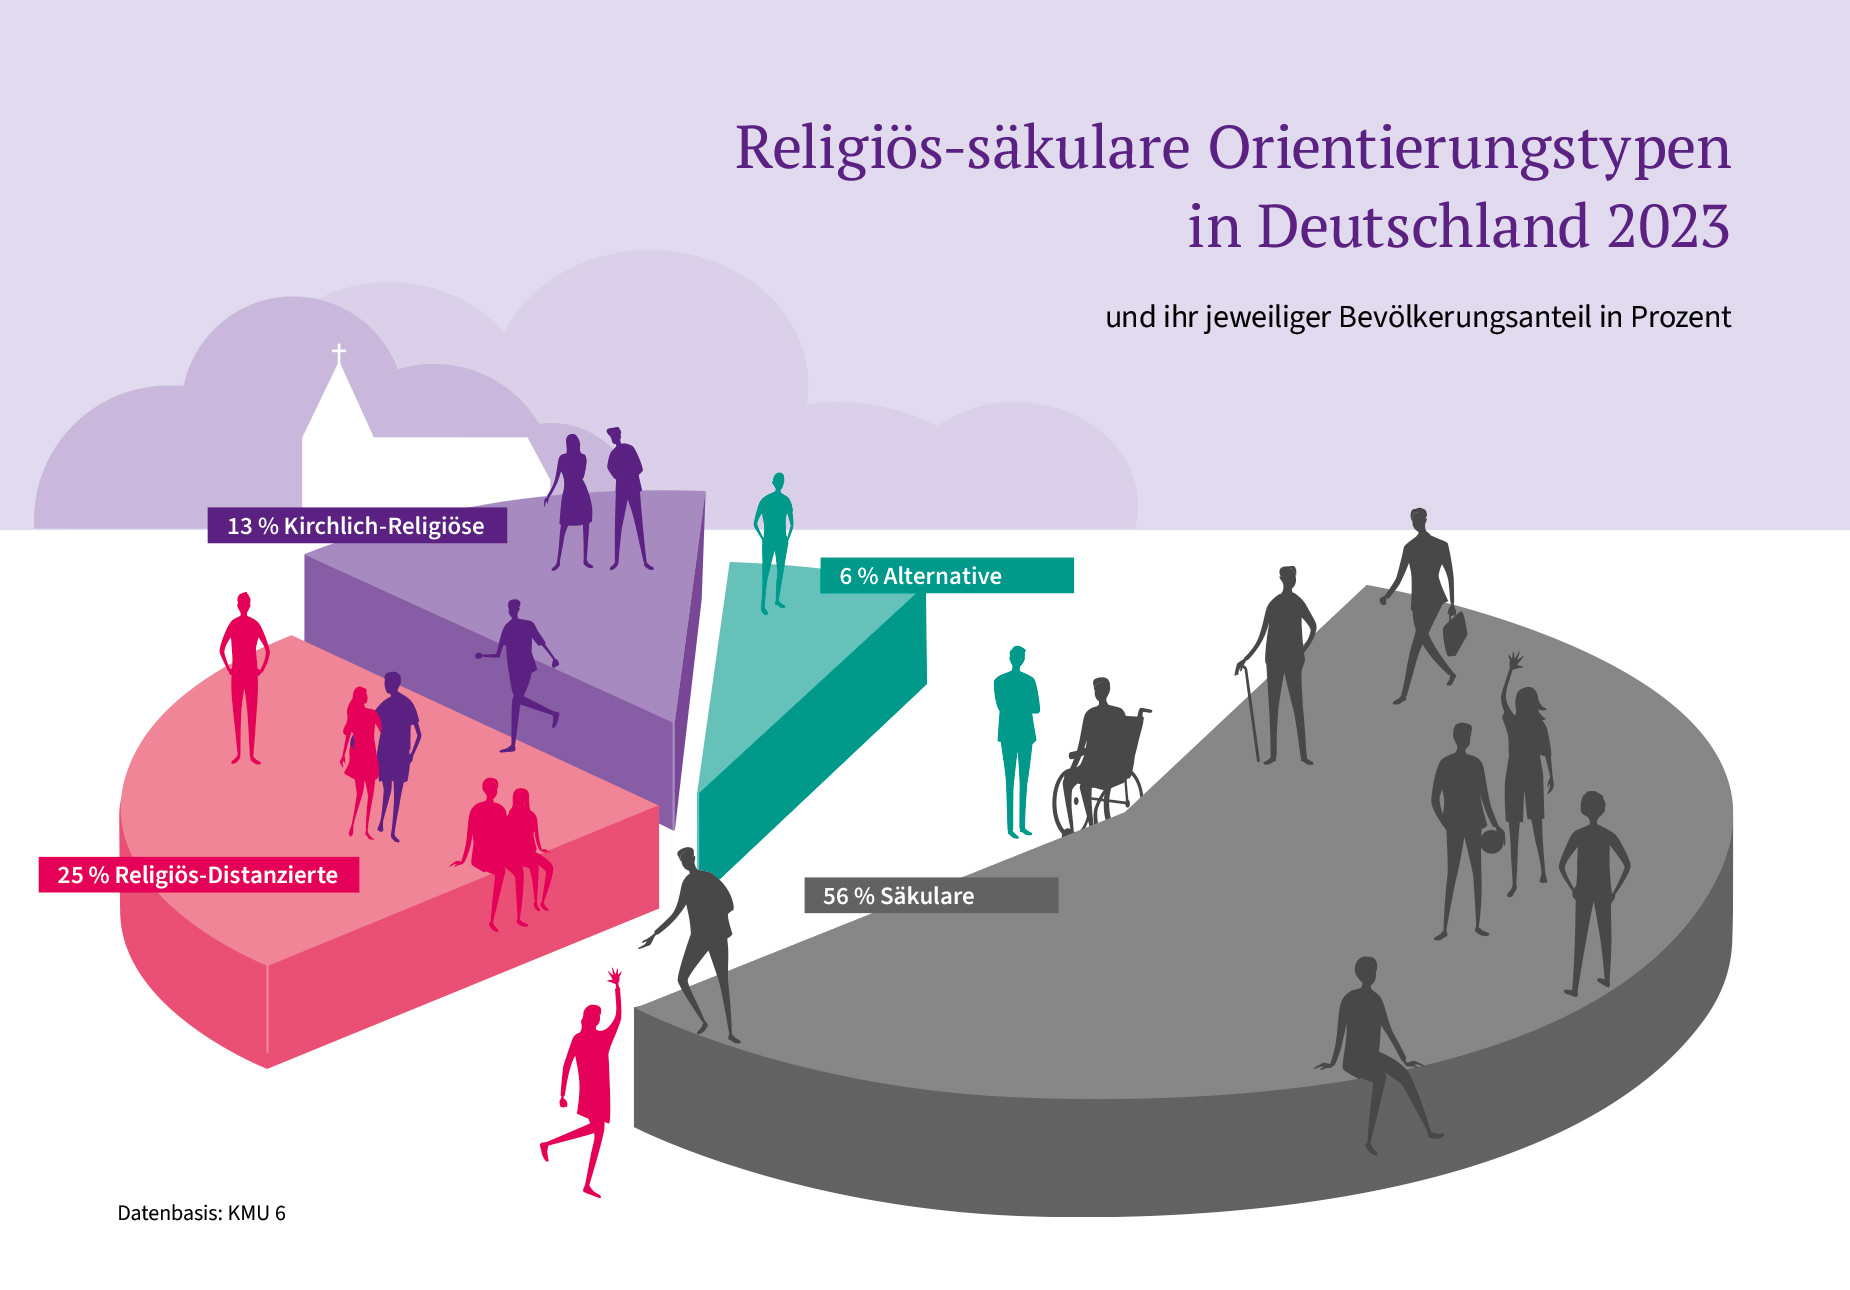 Infografik: Religiosität in Deutschland, Datenbasis: KMU 6  Die Grafik zeigt anhand eines dreidimensionalen Kreisdiagrammes die Gruppengrößen einer Typologisierung von 4 religiös-säkularen Orientierungstypen. Diese 4 Gruppen sind mit 56% (jeweils bezogen auf den Bevölkerungsanteil) die Säkularen, mit 25% die Religiös-Distanzierten, mit 13% die Kirchlich-Religiösen, und mit 6% die Alternativen.